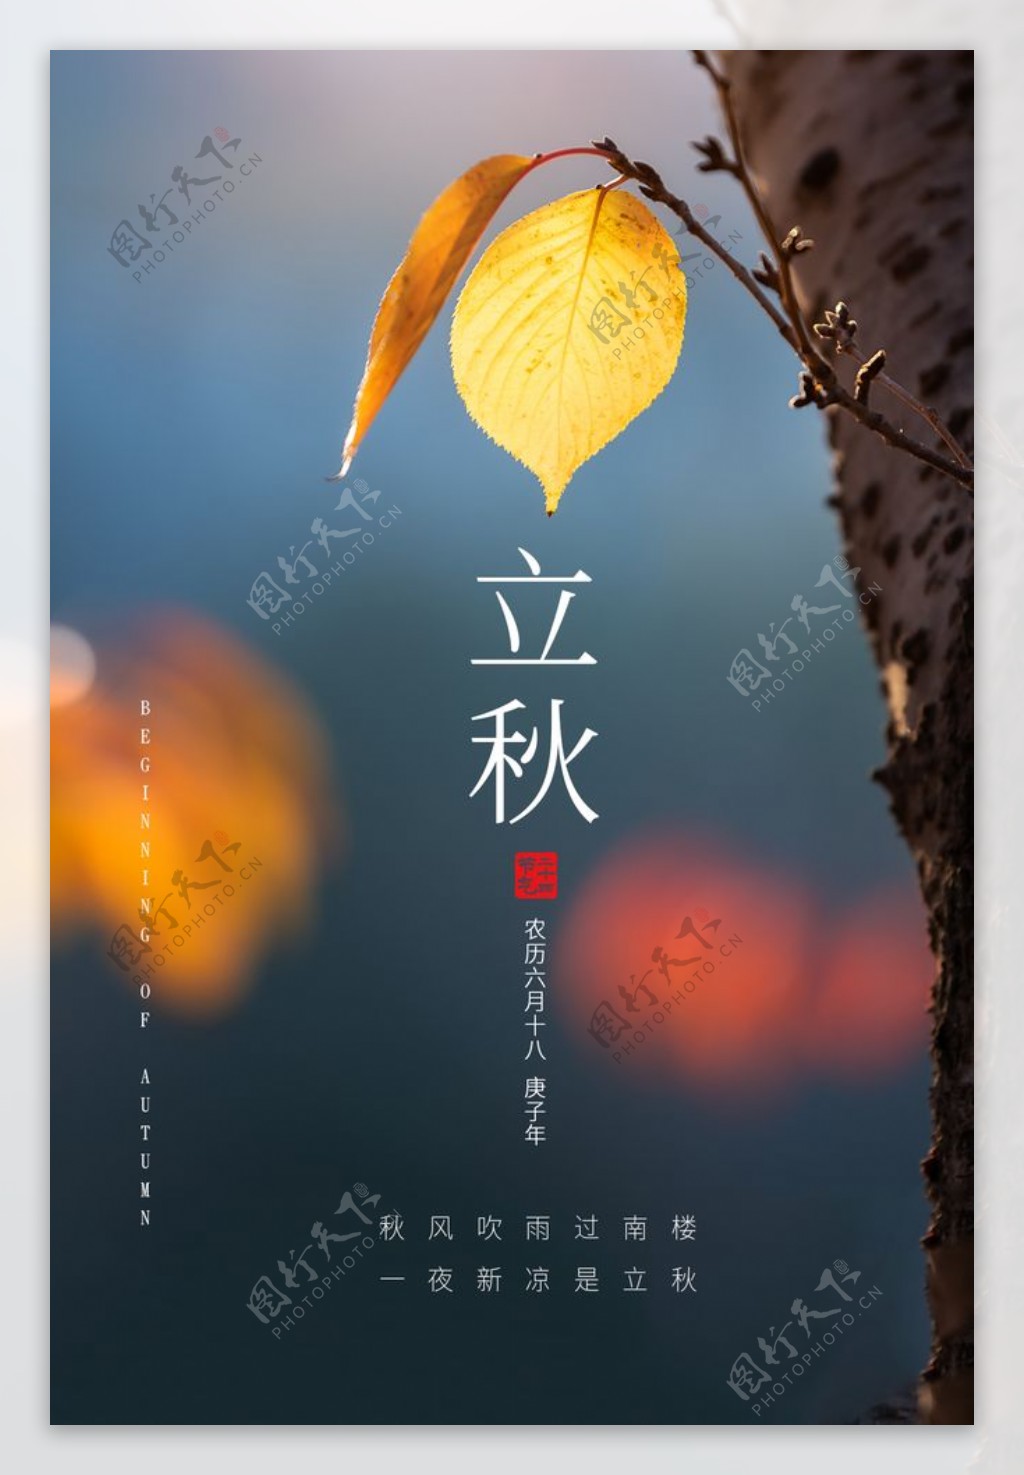 立秋传统节日宣传活动海报素材